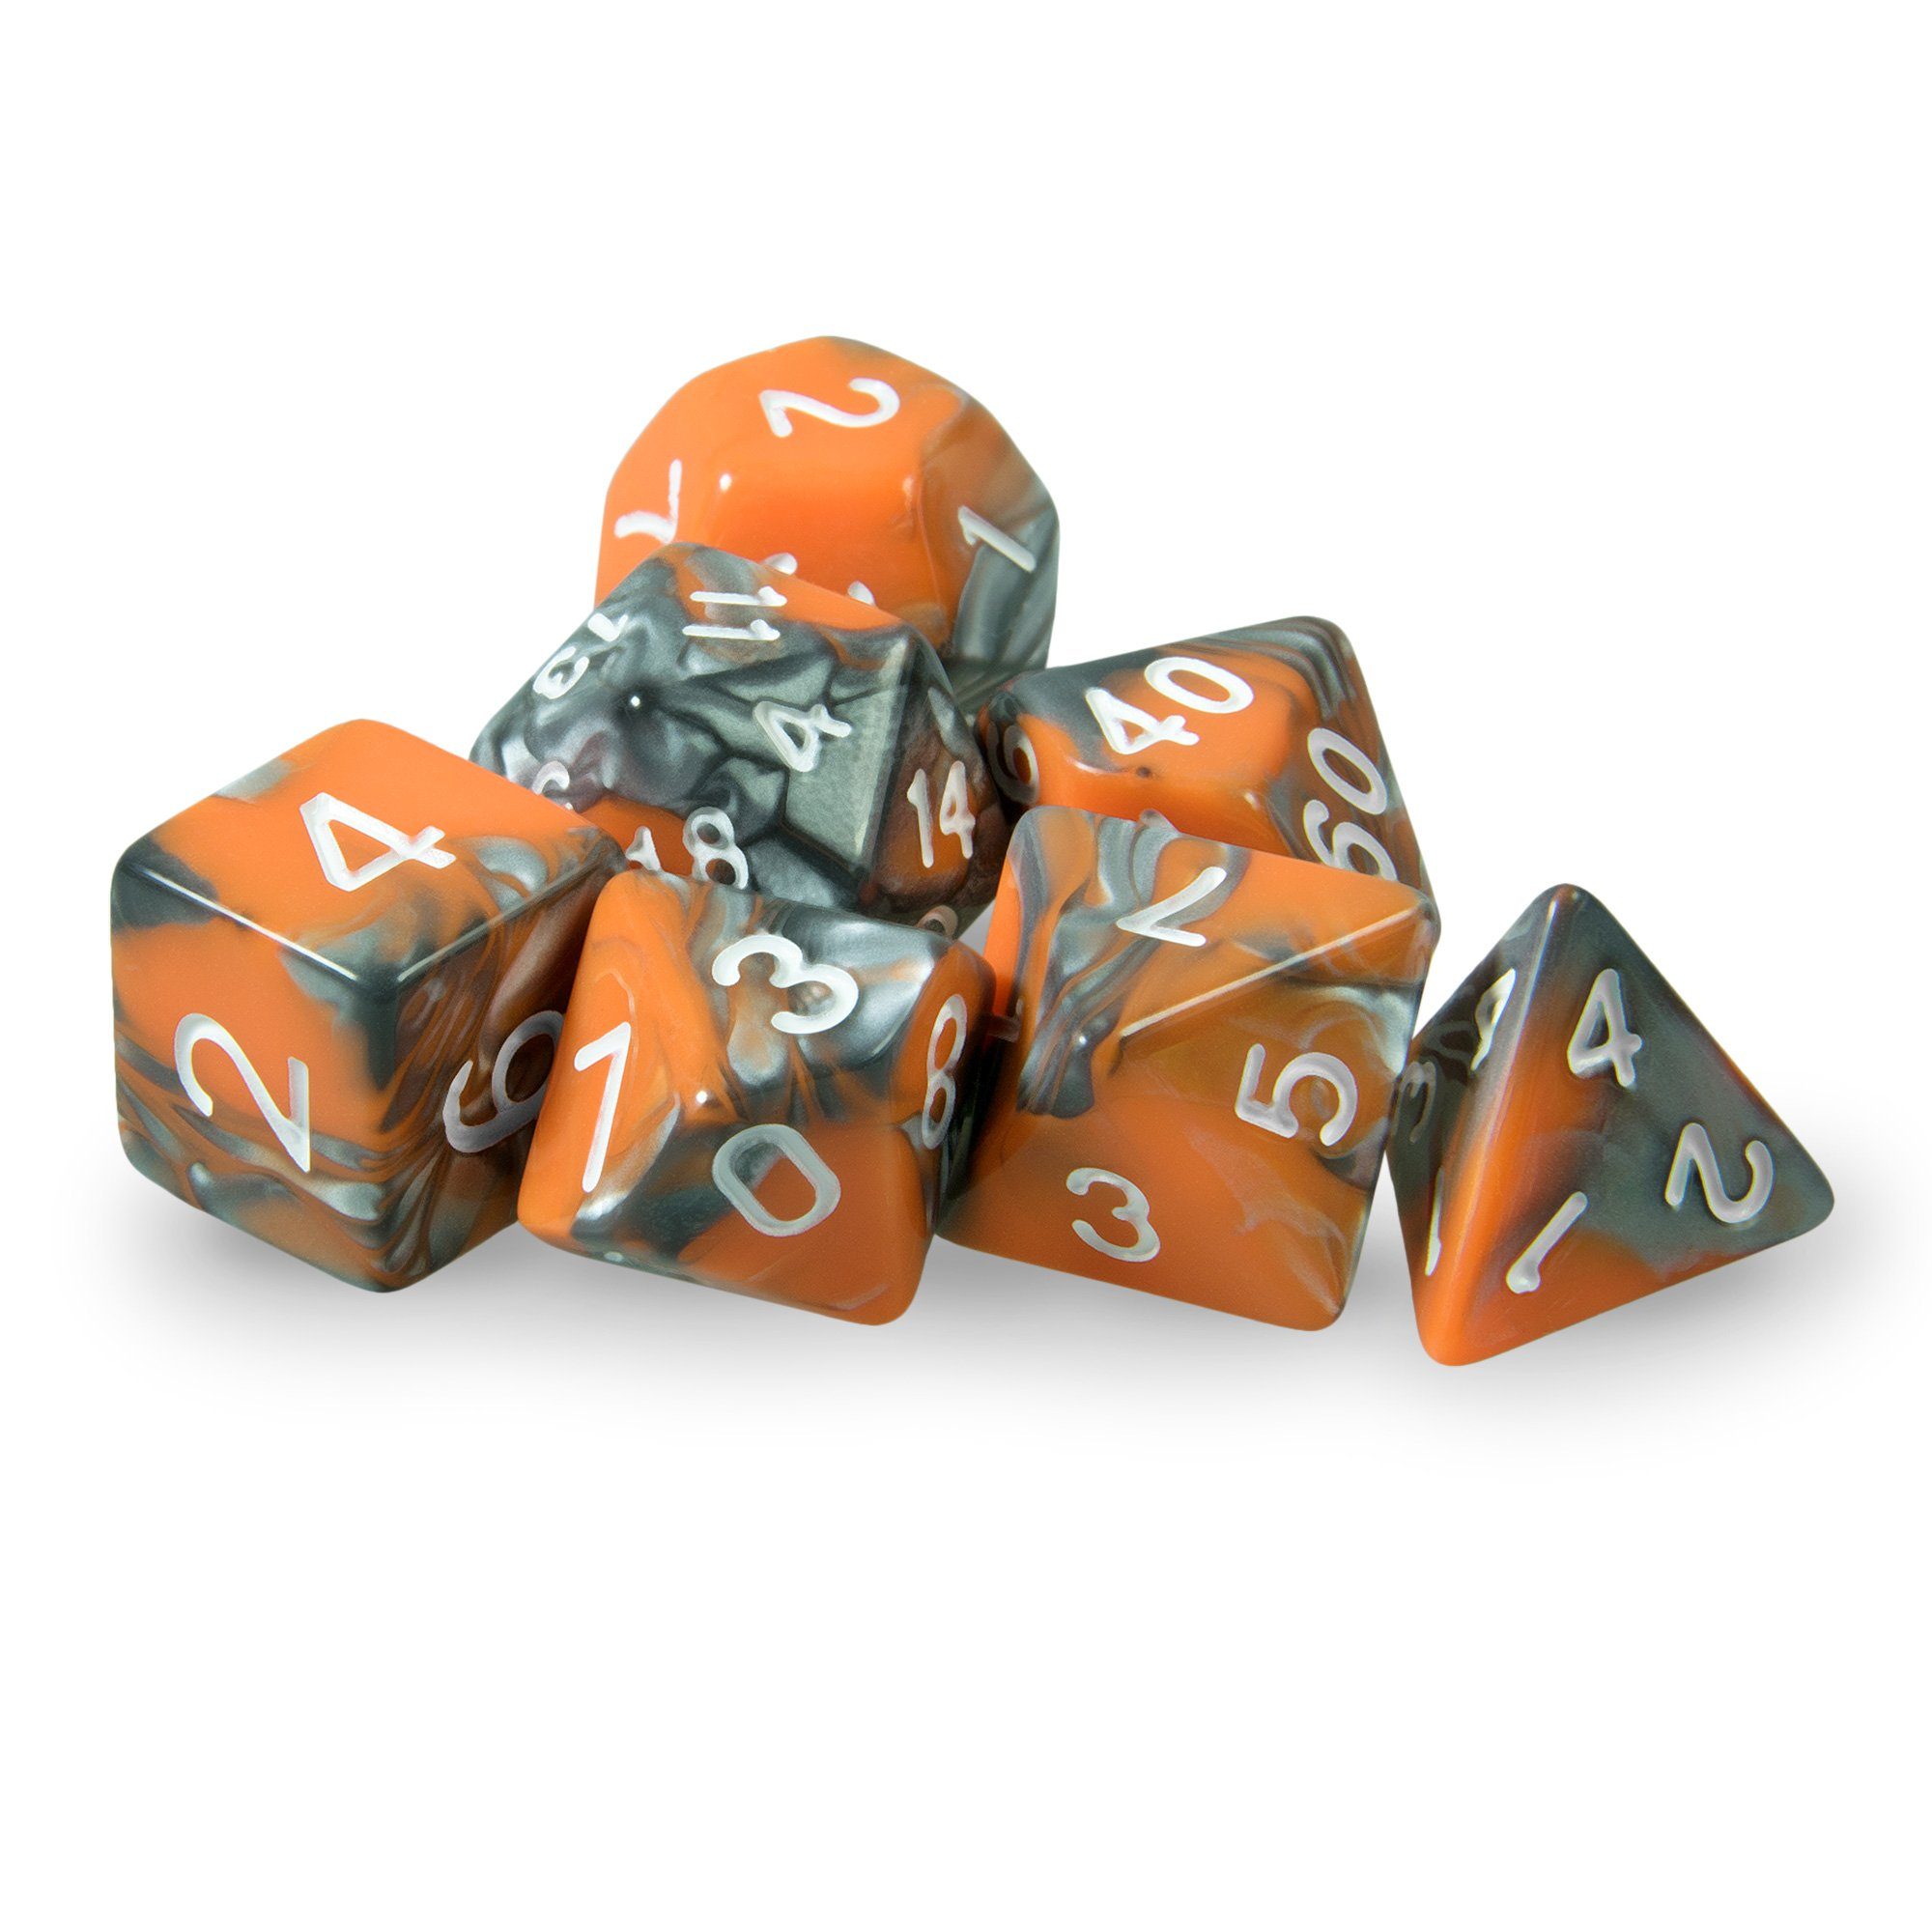 SHIBBY Spielesammlung, DND mit 7 - Orange in polyedrische Würfel dichromatisch Beutel